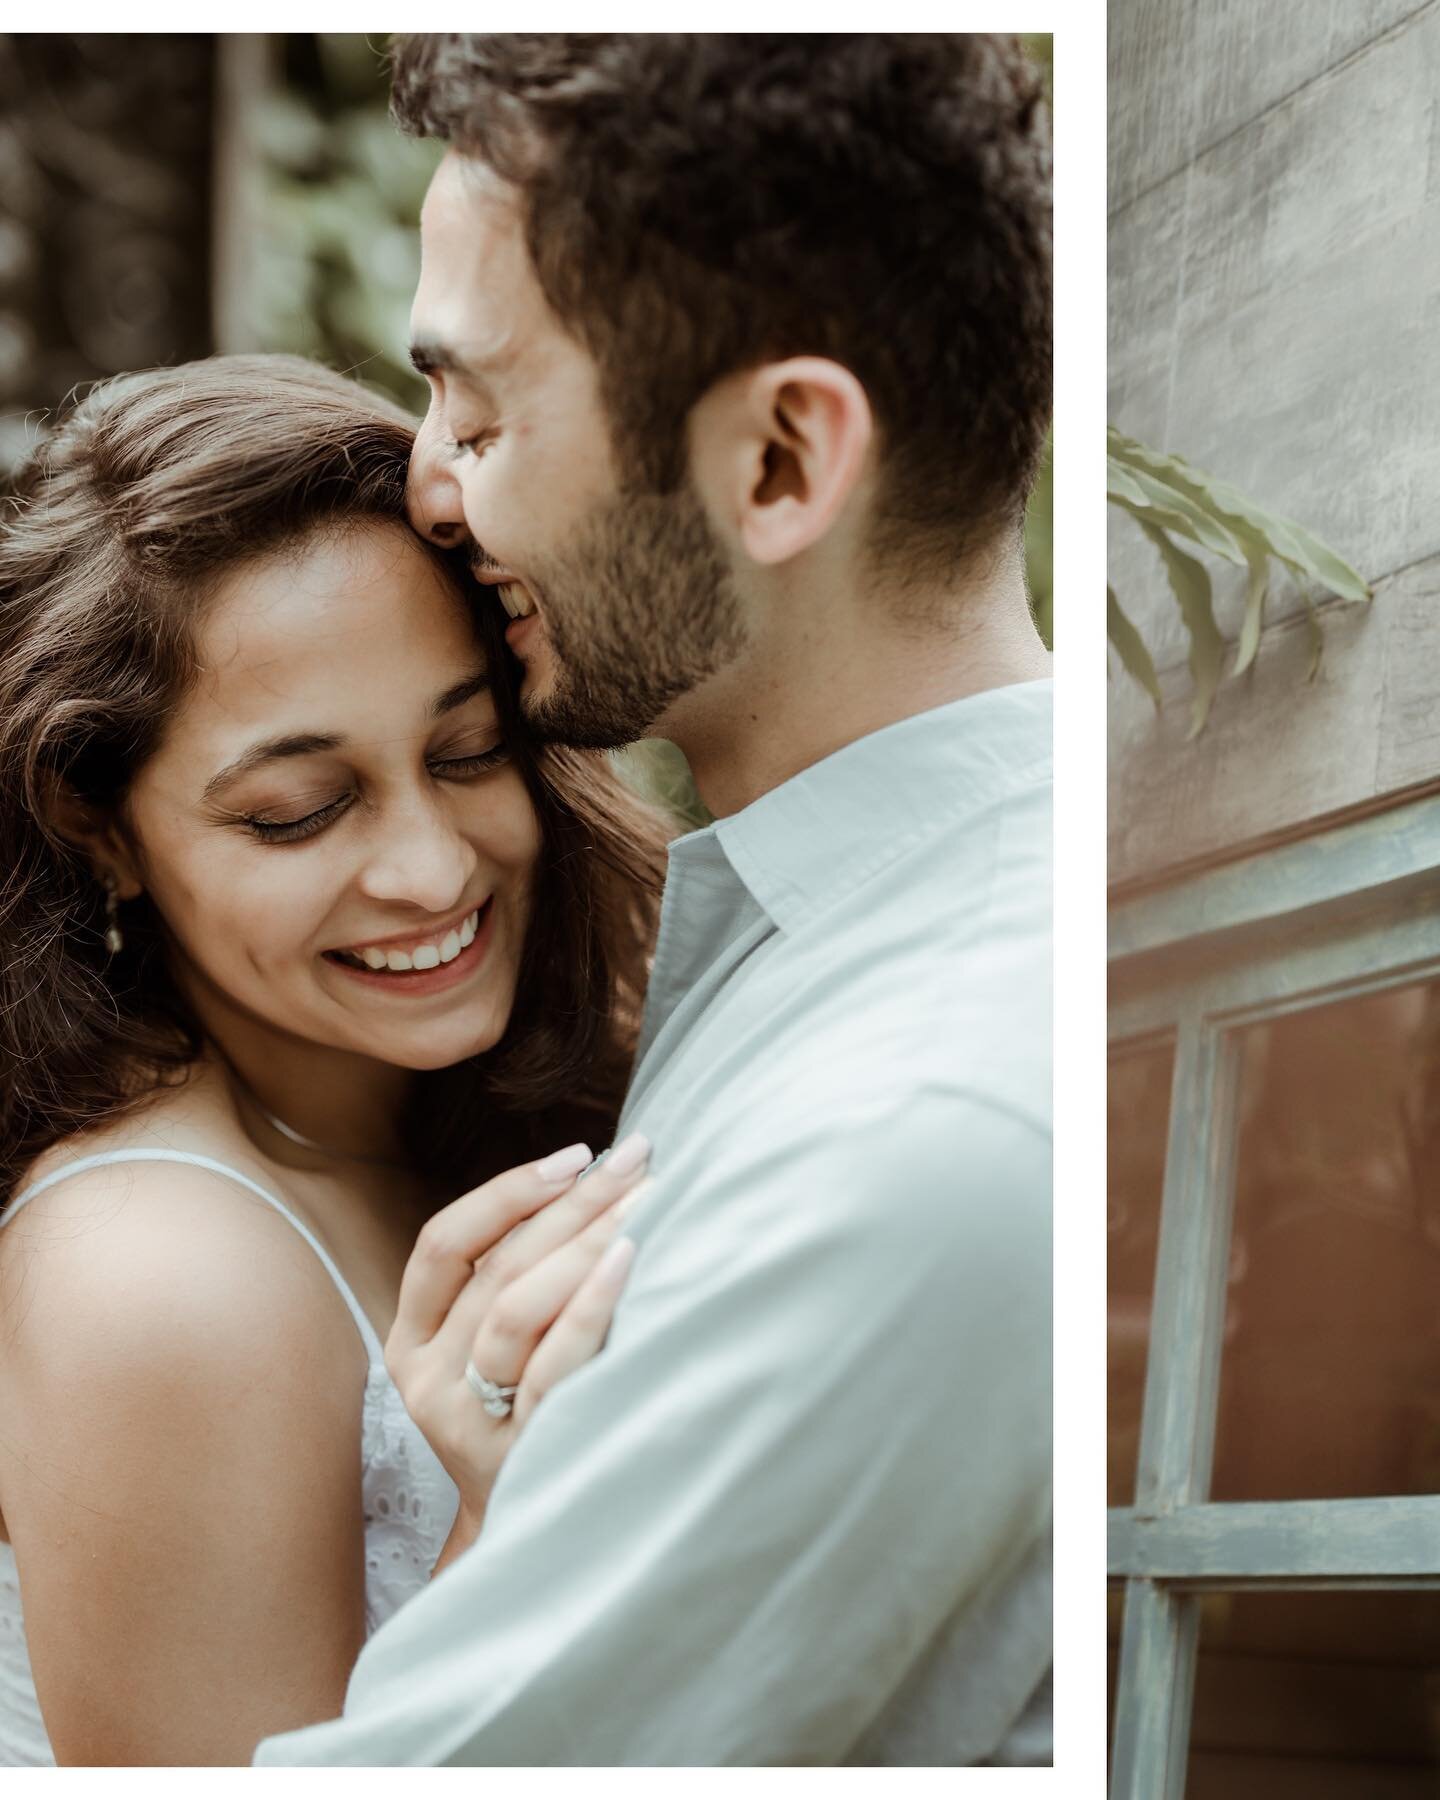 ✨✨Lolita + Leroy✨✨

.
.

#twosday
#BridesofMangaluru #BridesofIndia #indianbride
#GroomsofMangaluru #GroomsofIndia #Indiangrooms
#Bride #groom #indiagroom #Indianbride
#Weddingphotography #IndianWedding #Weddingshoot #Candidshoot #candidphotography #